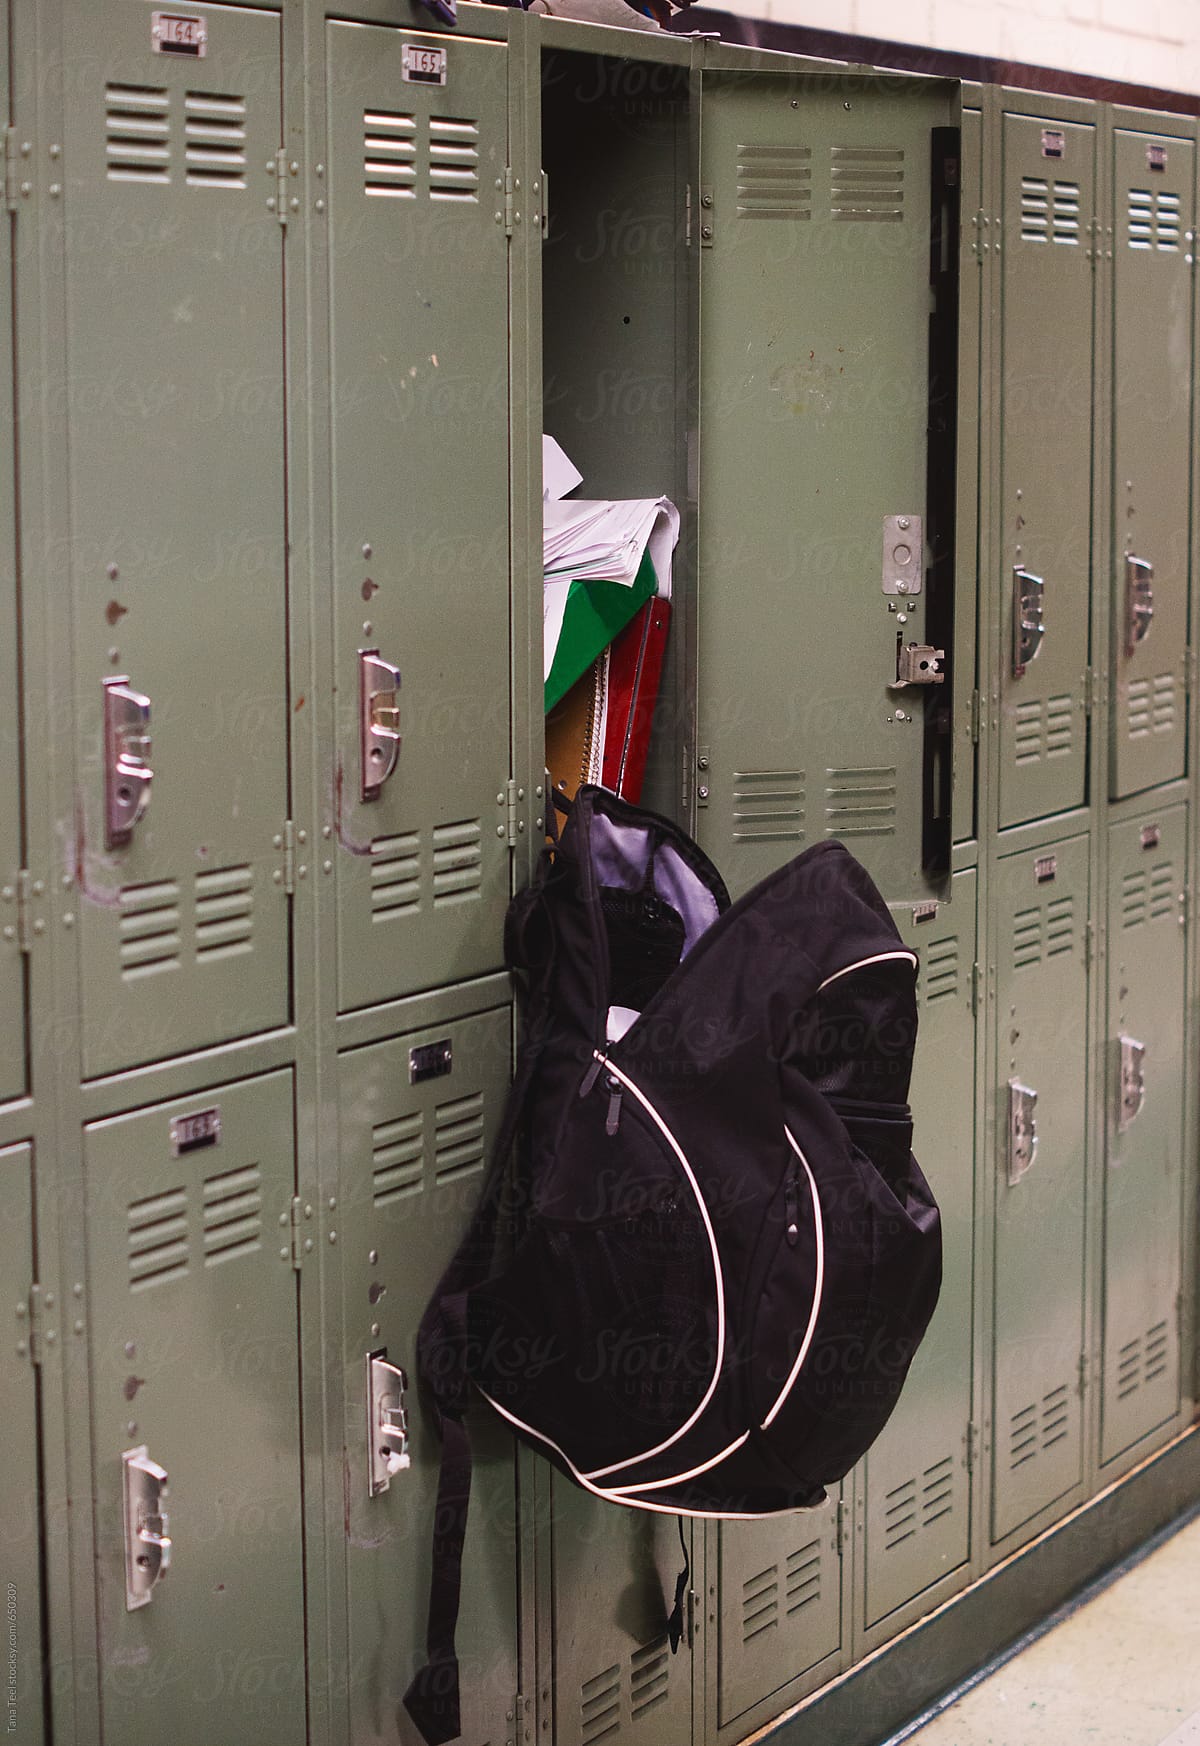 Backpack hangs from open messy locker in school hallway